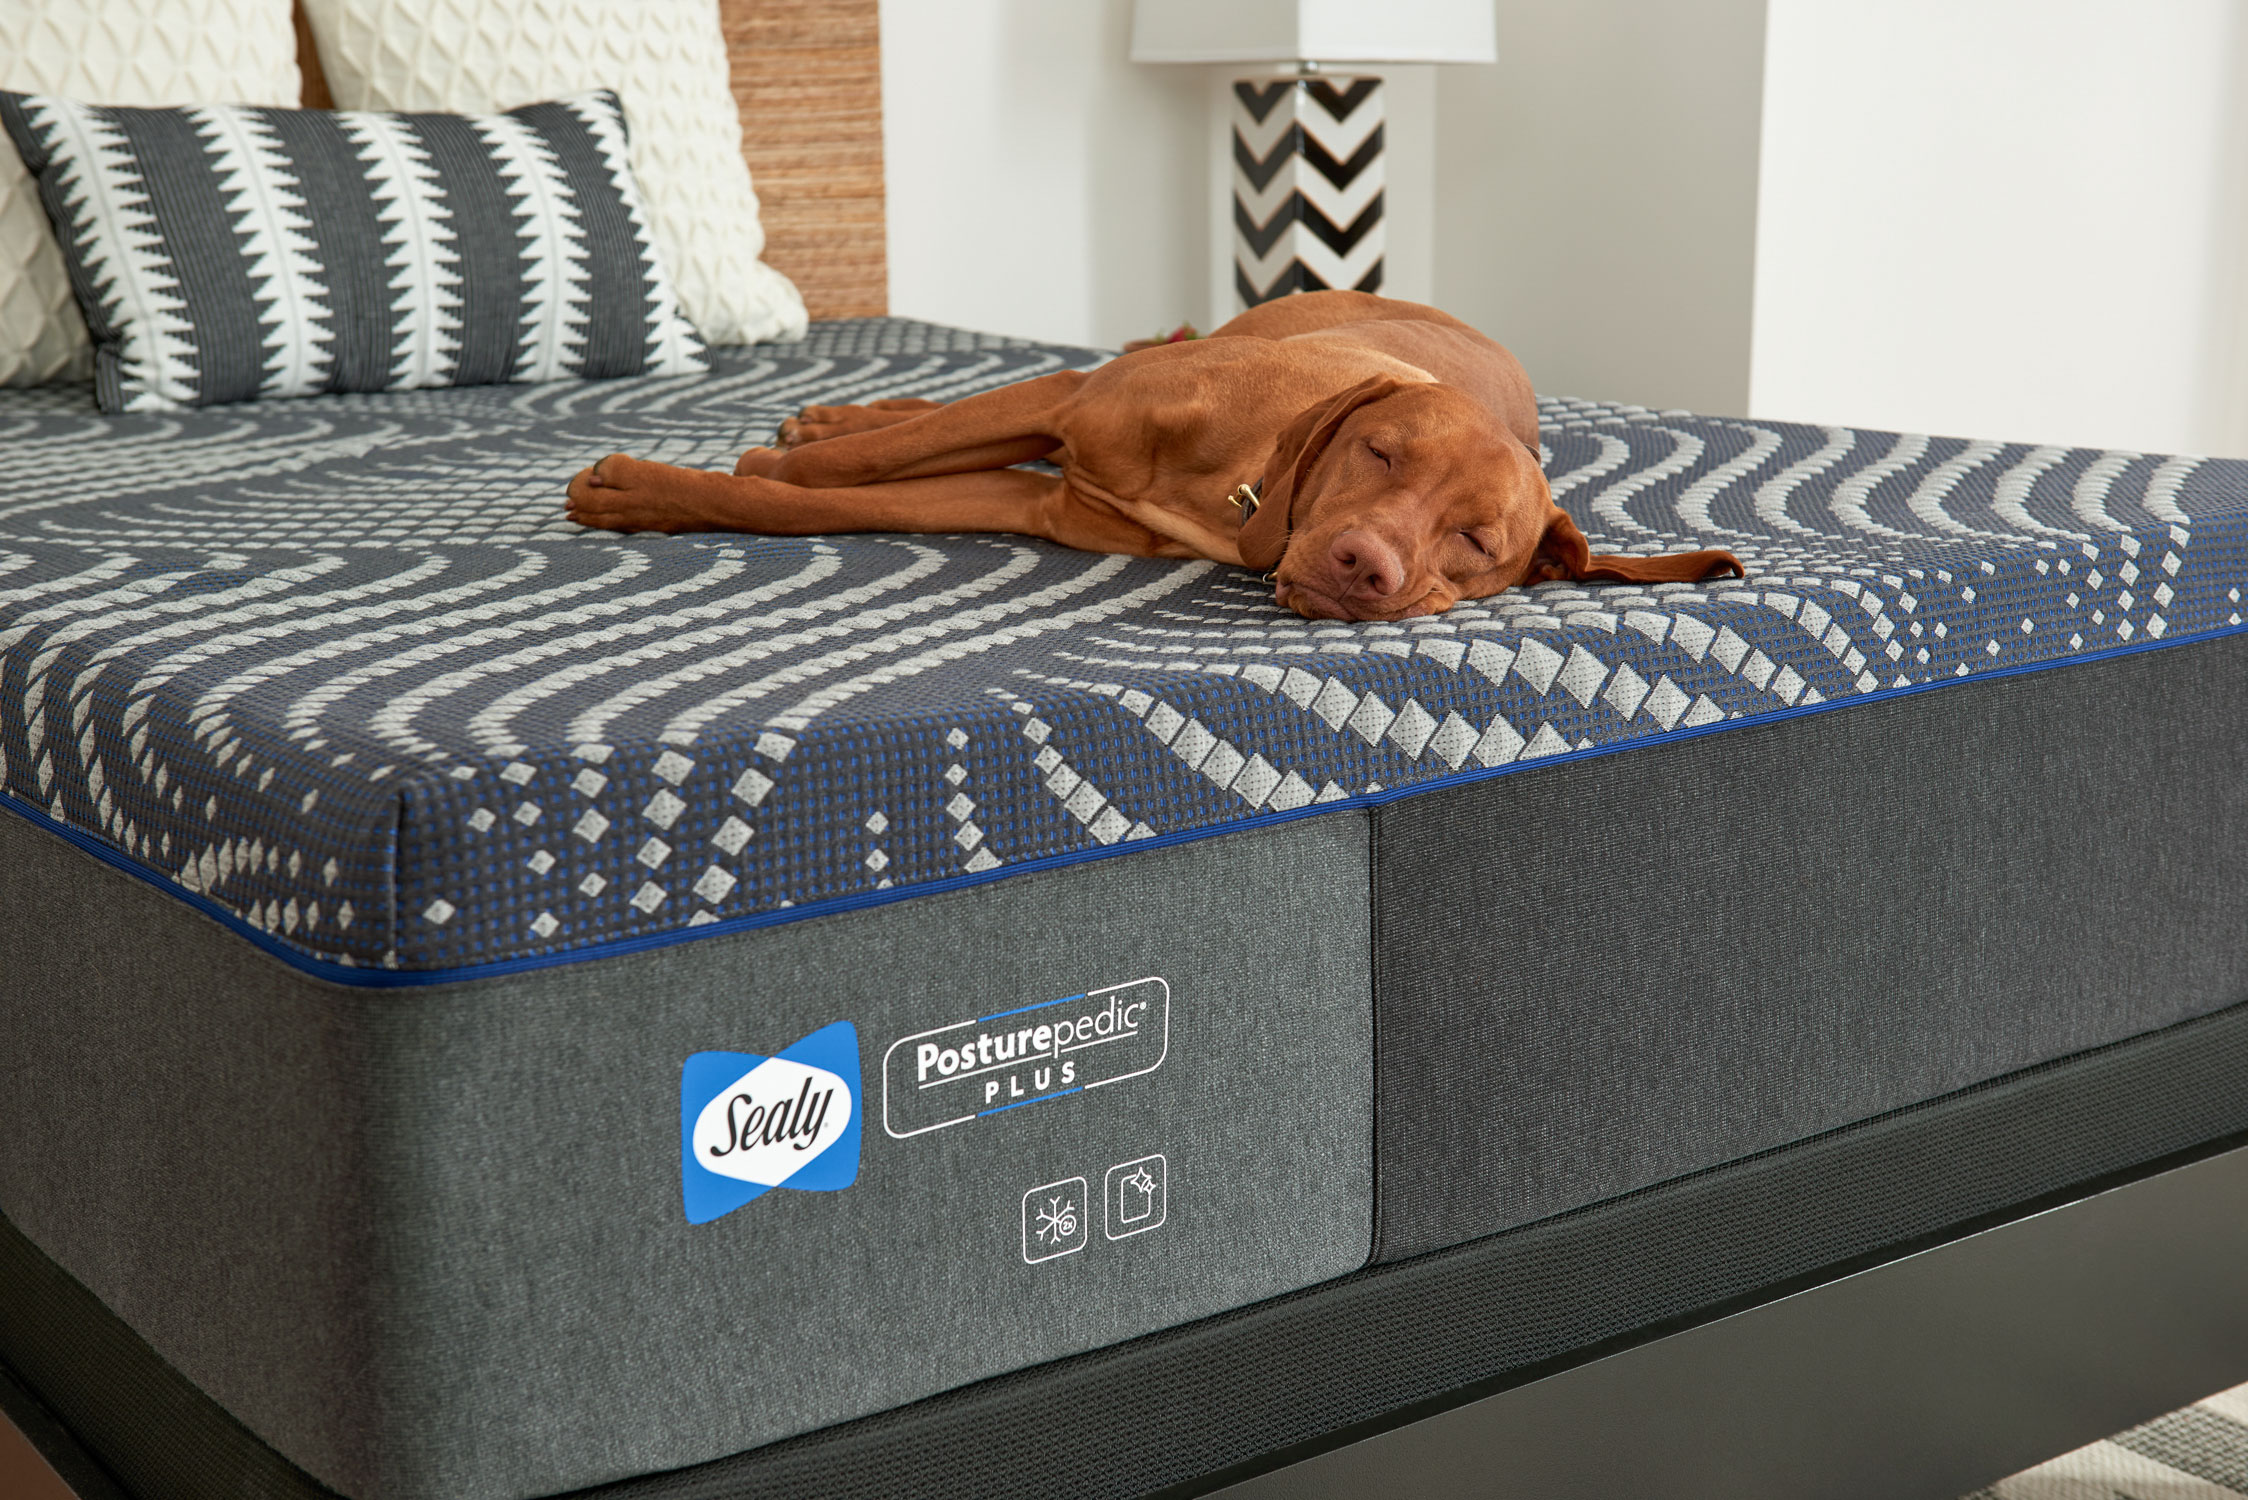 Dog on Sealy mattress